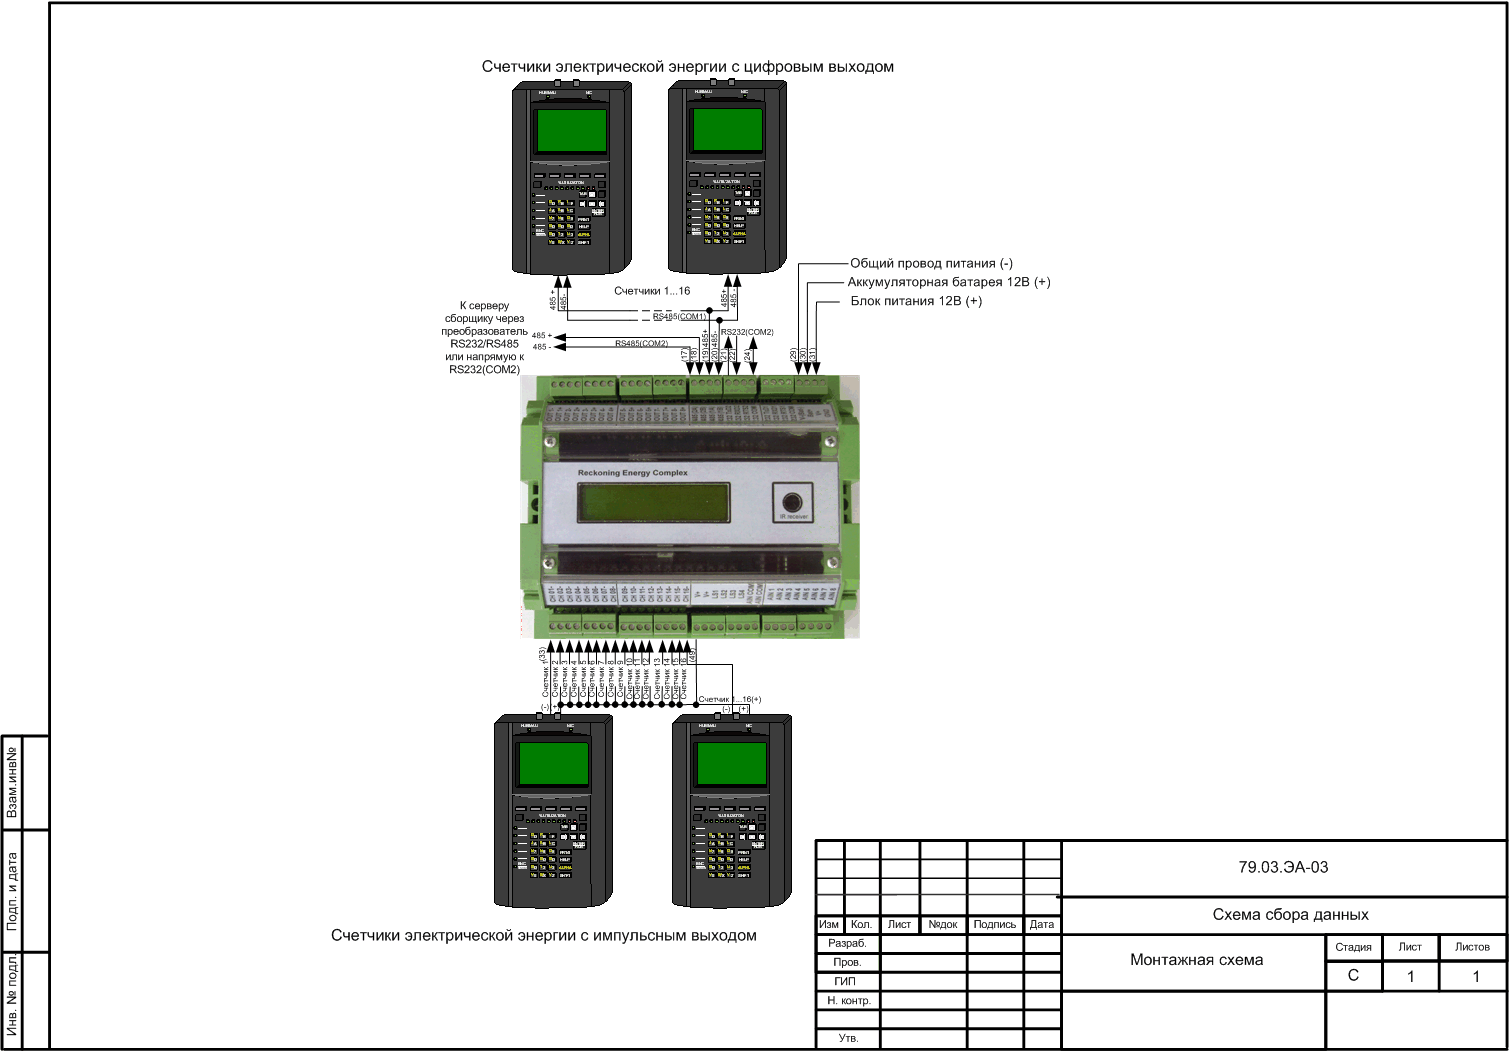 Подключение УСПД REC 1.x к внешним устройствам